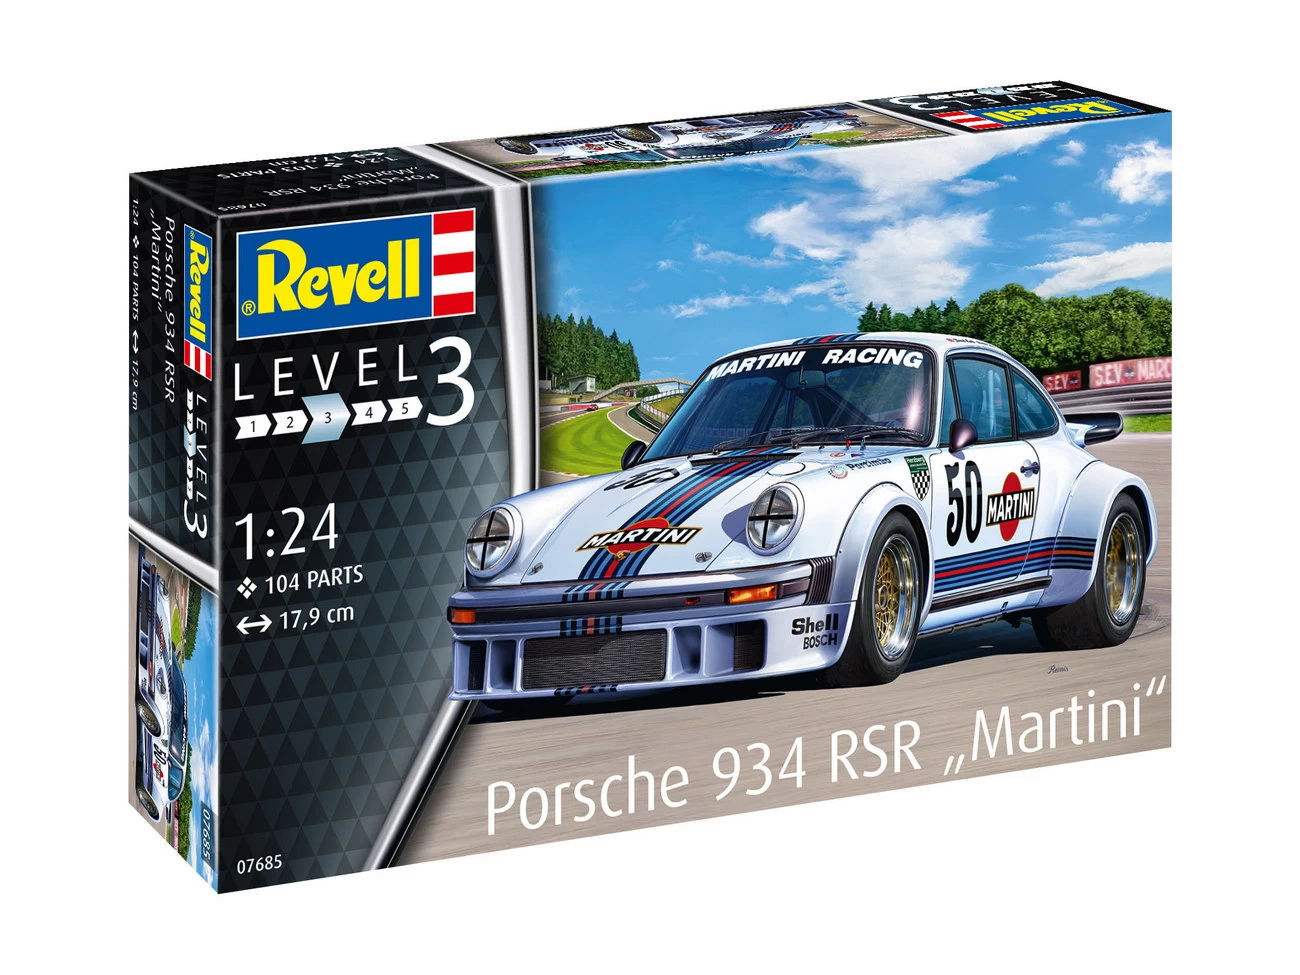 Porsche 934 RSR Martini (07685)